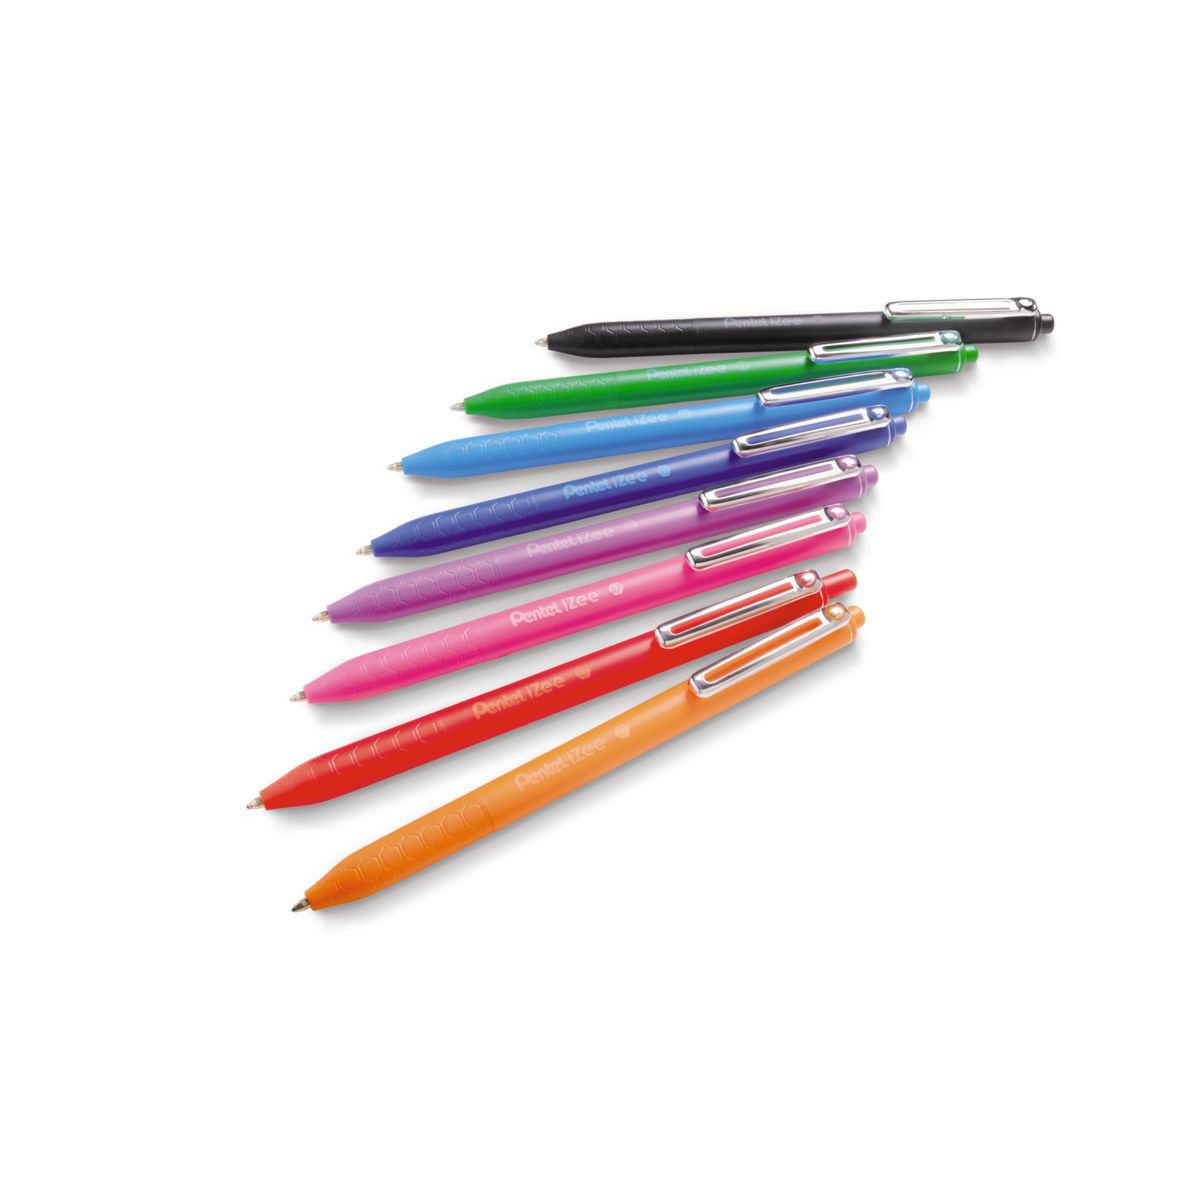 Długopis Pentel iZee różowy 0,7mm (BX467)